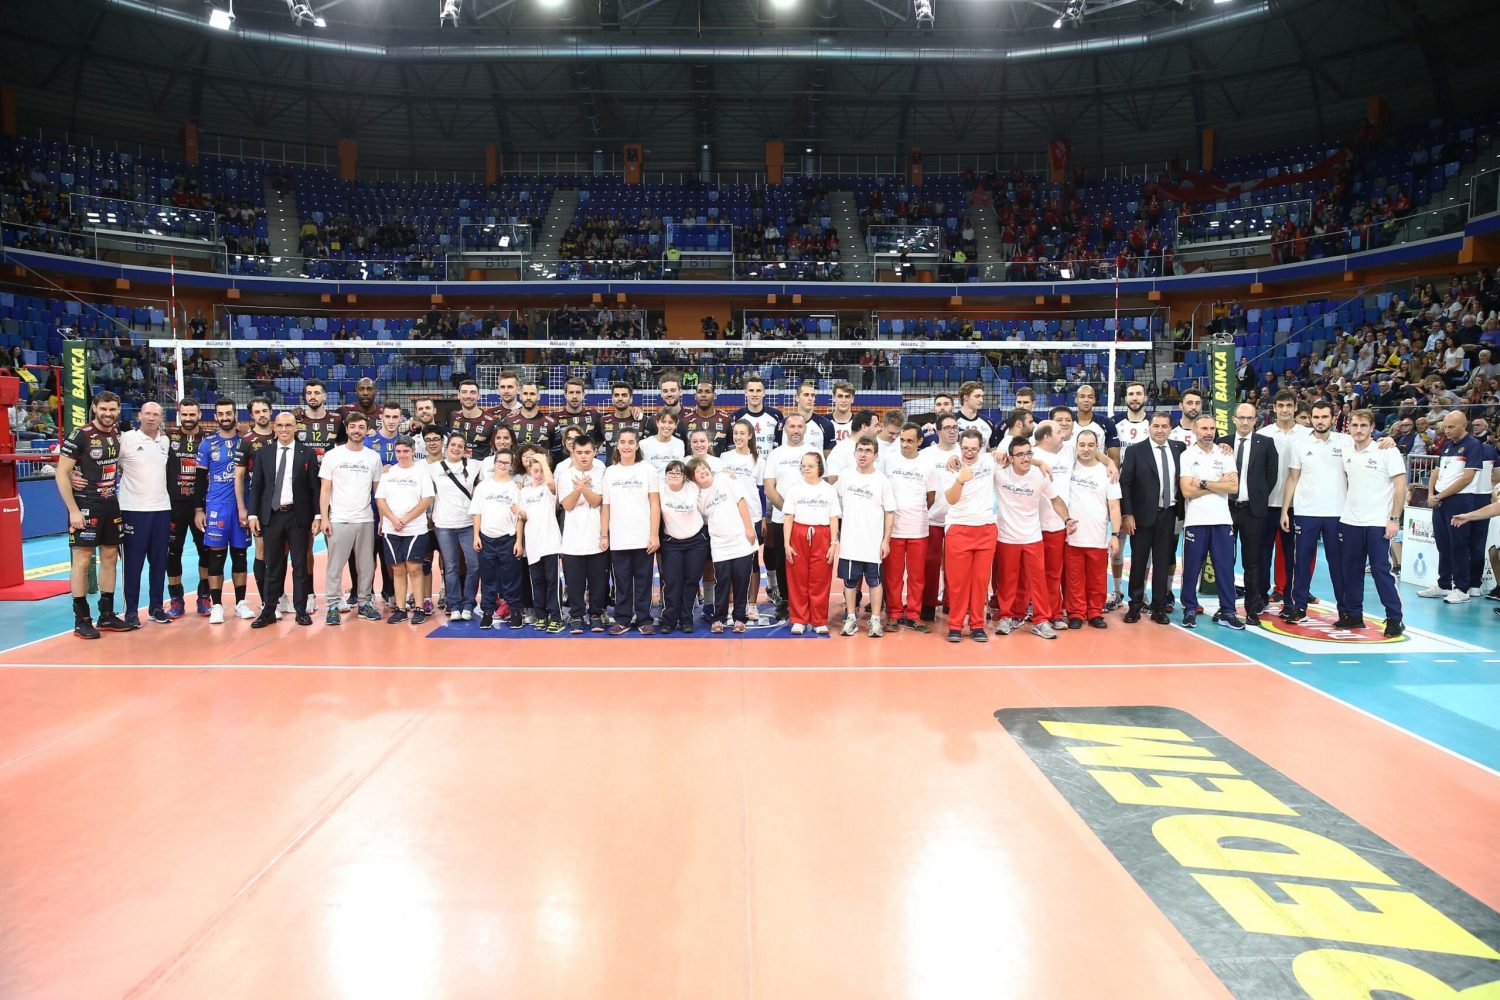 La pallavolo unificata Special Olympics apre la partita di campionato all’Allianz Cloud